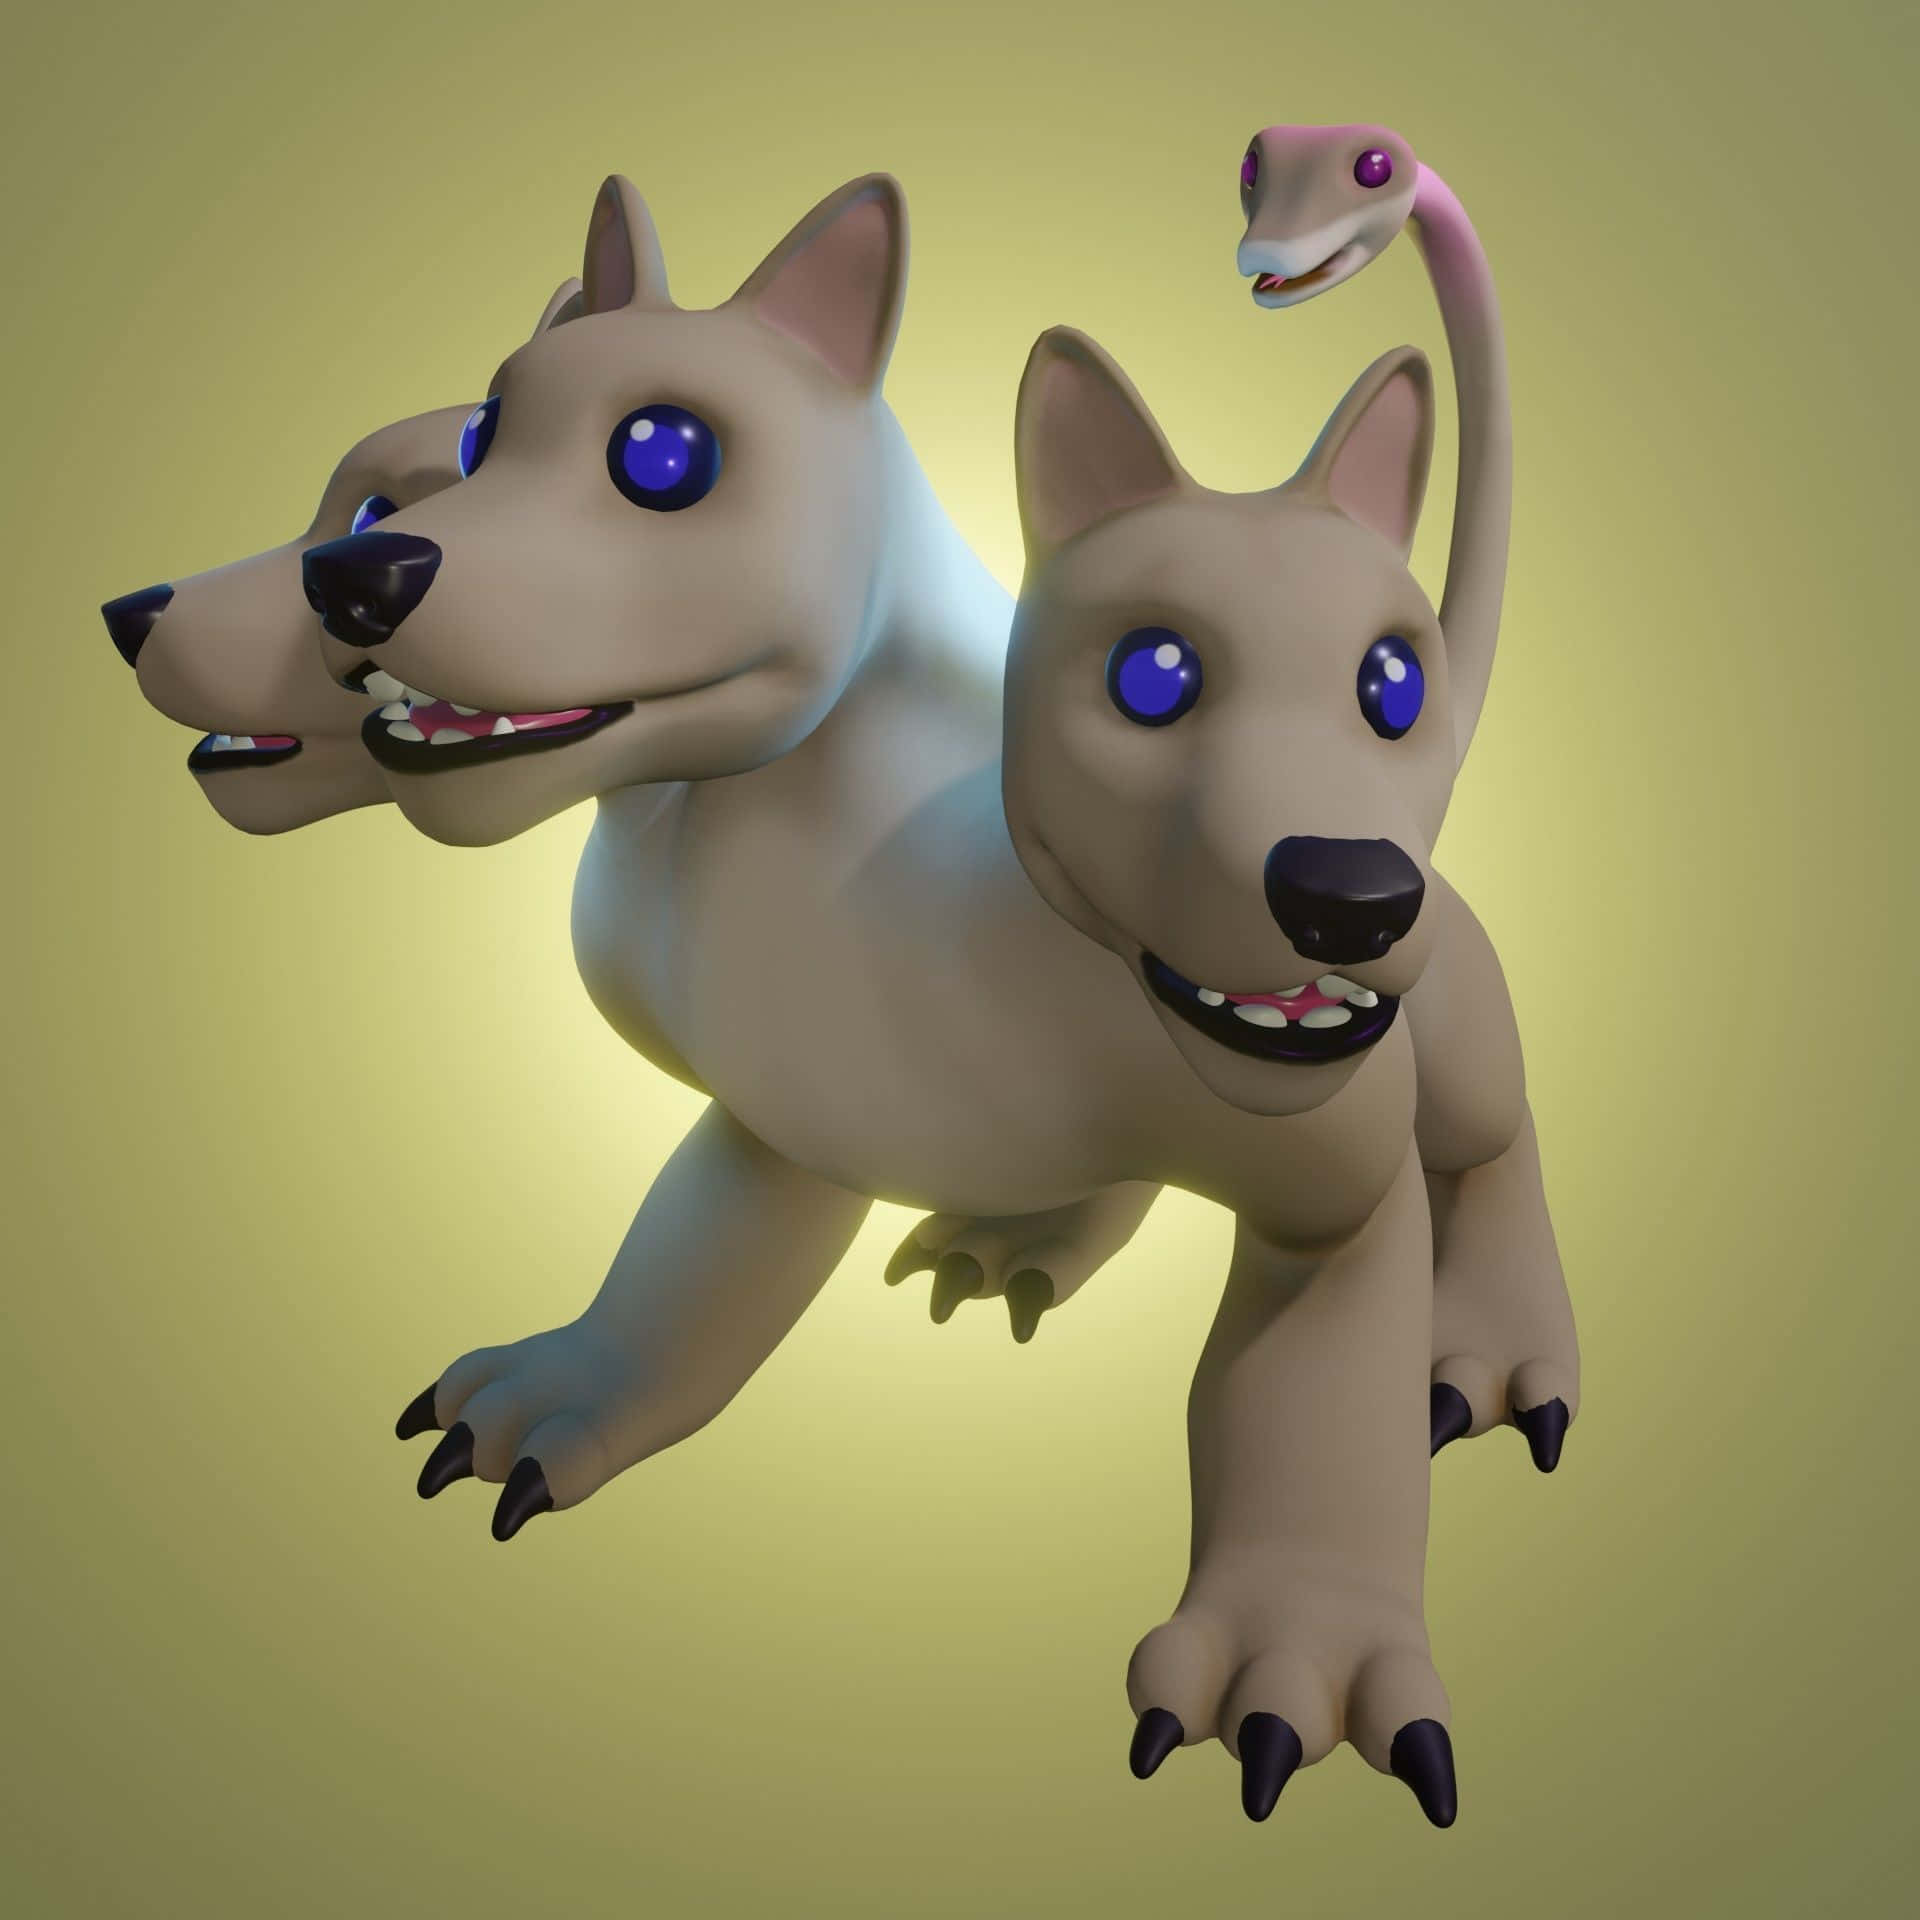 En3d-modell Av En Hund Med Blåa Ögon